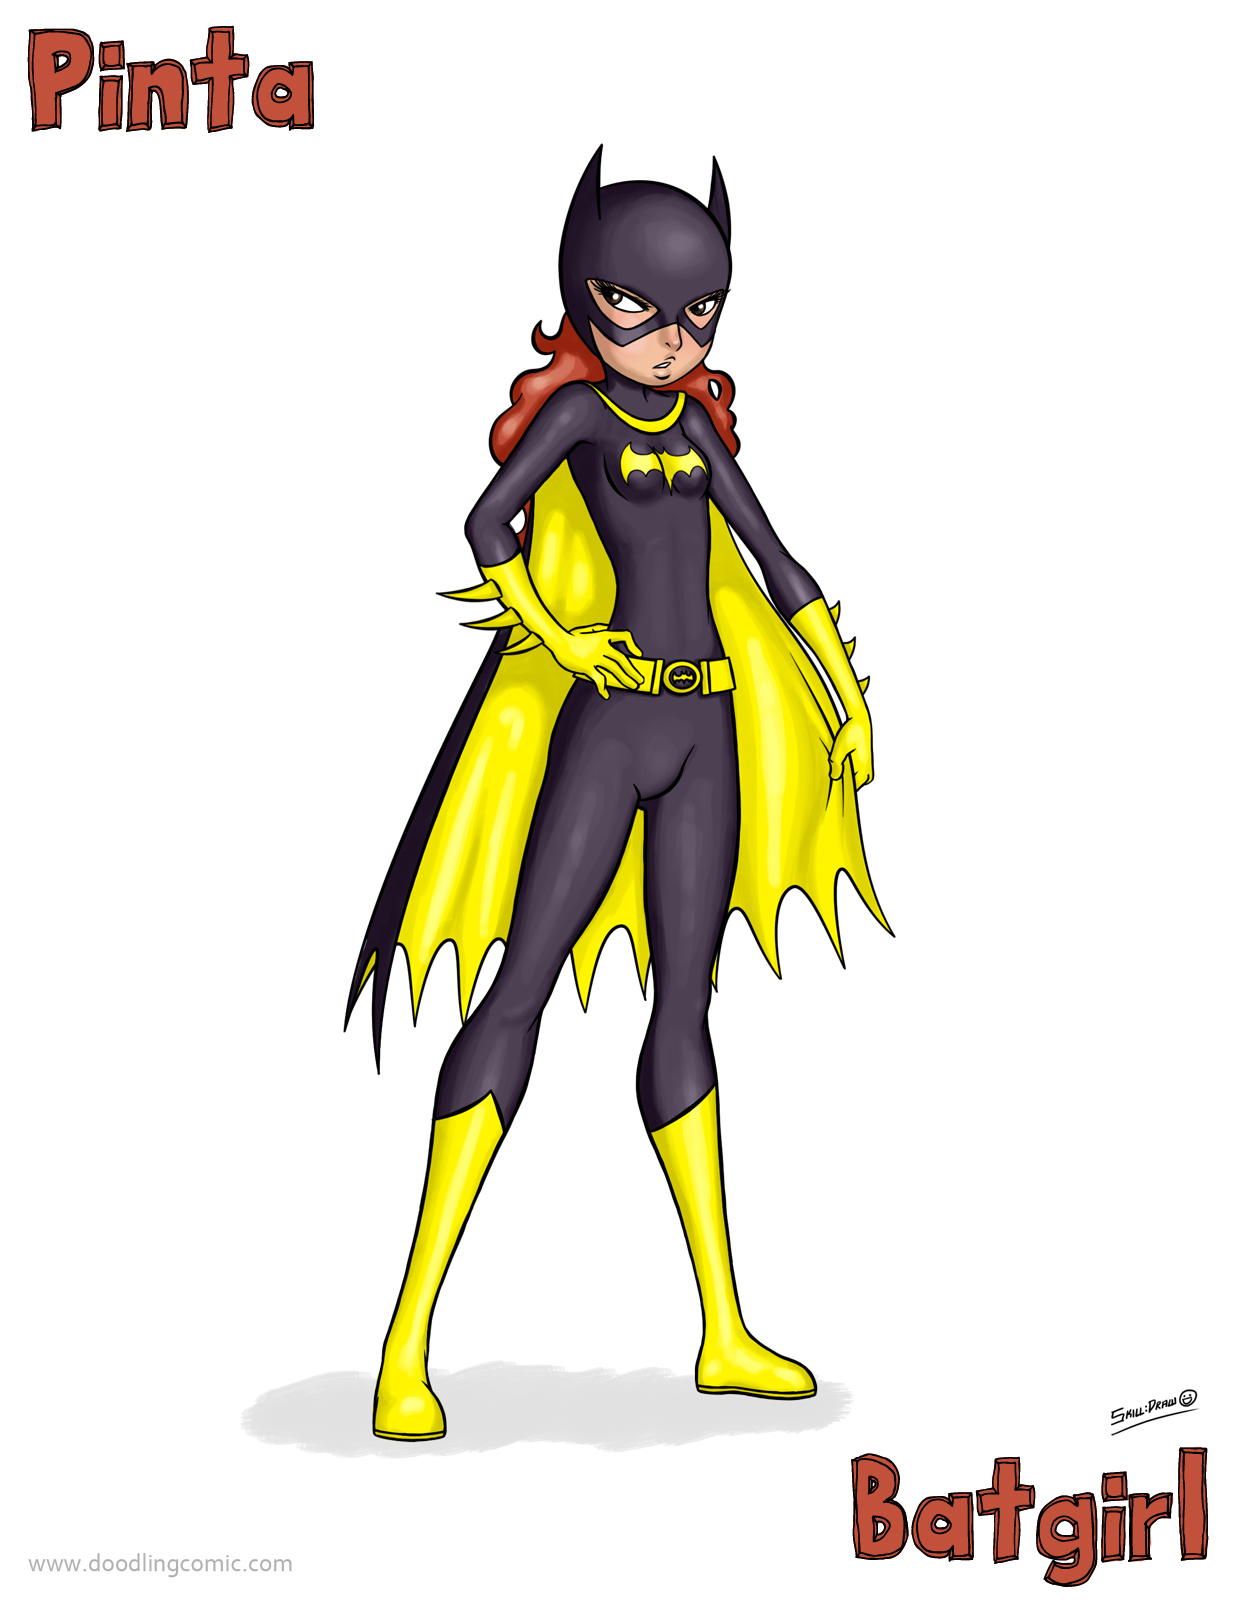 2012-02-11-pinta-batgirl.jpg